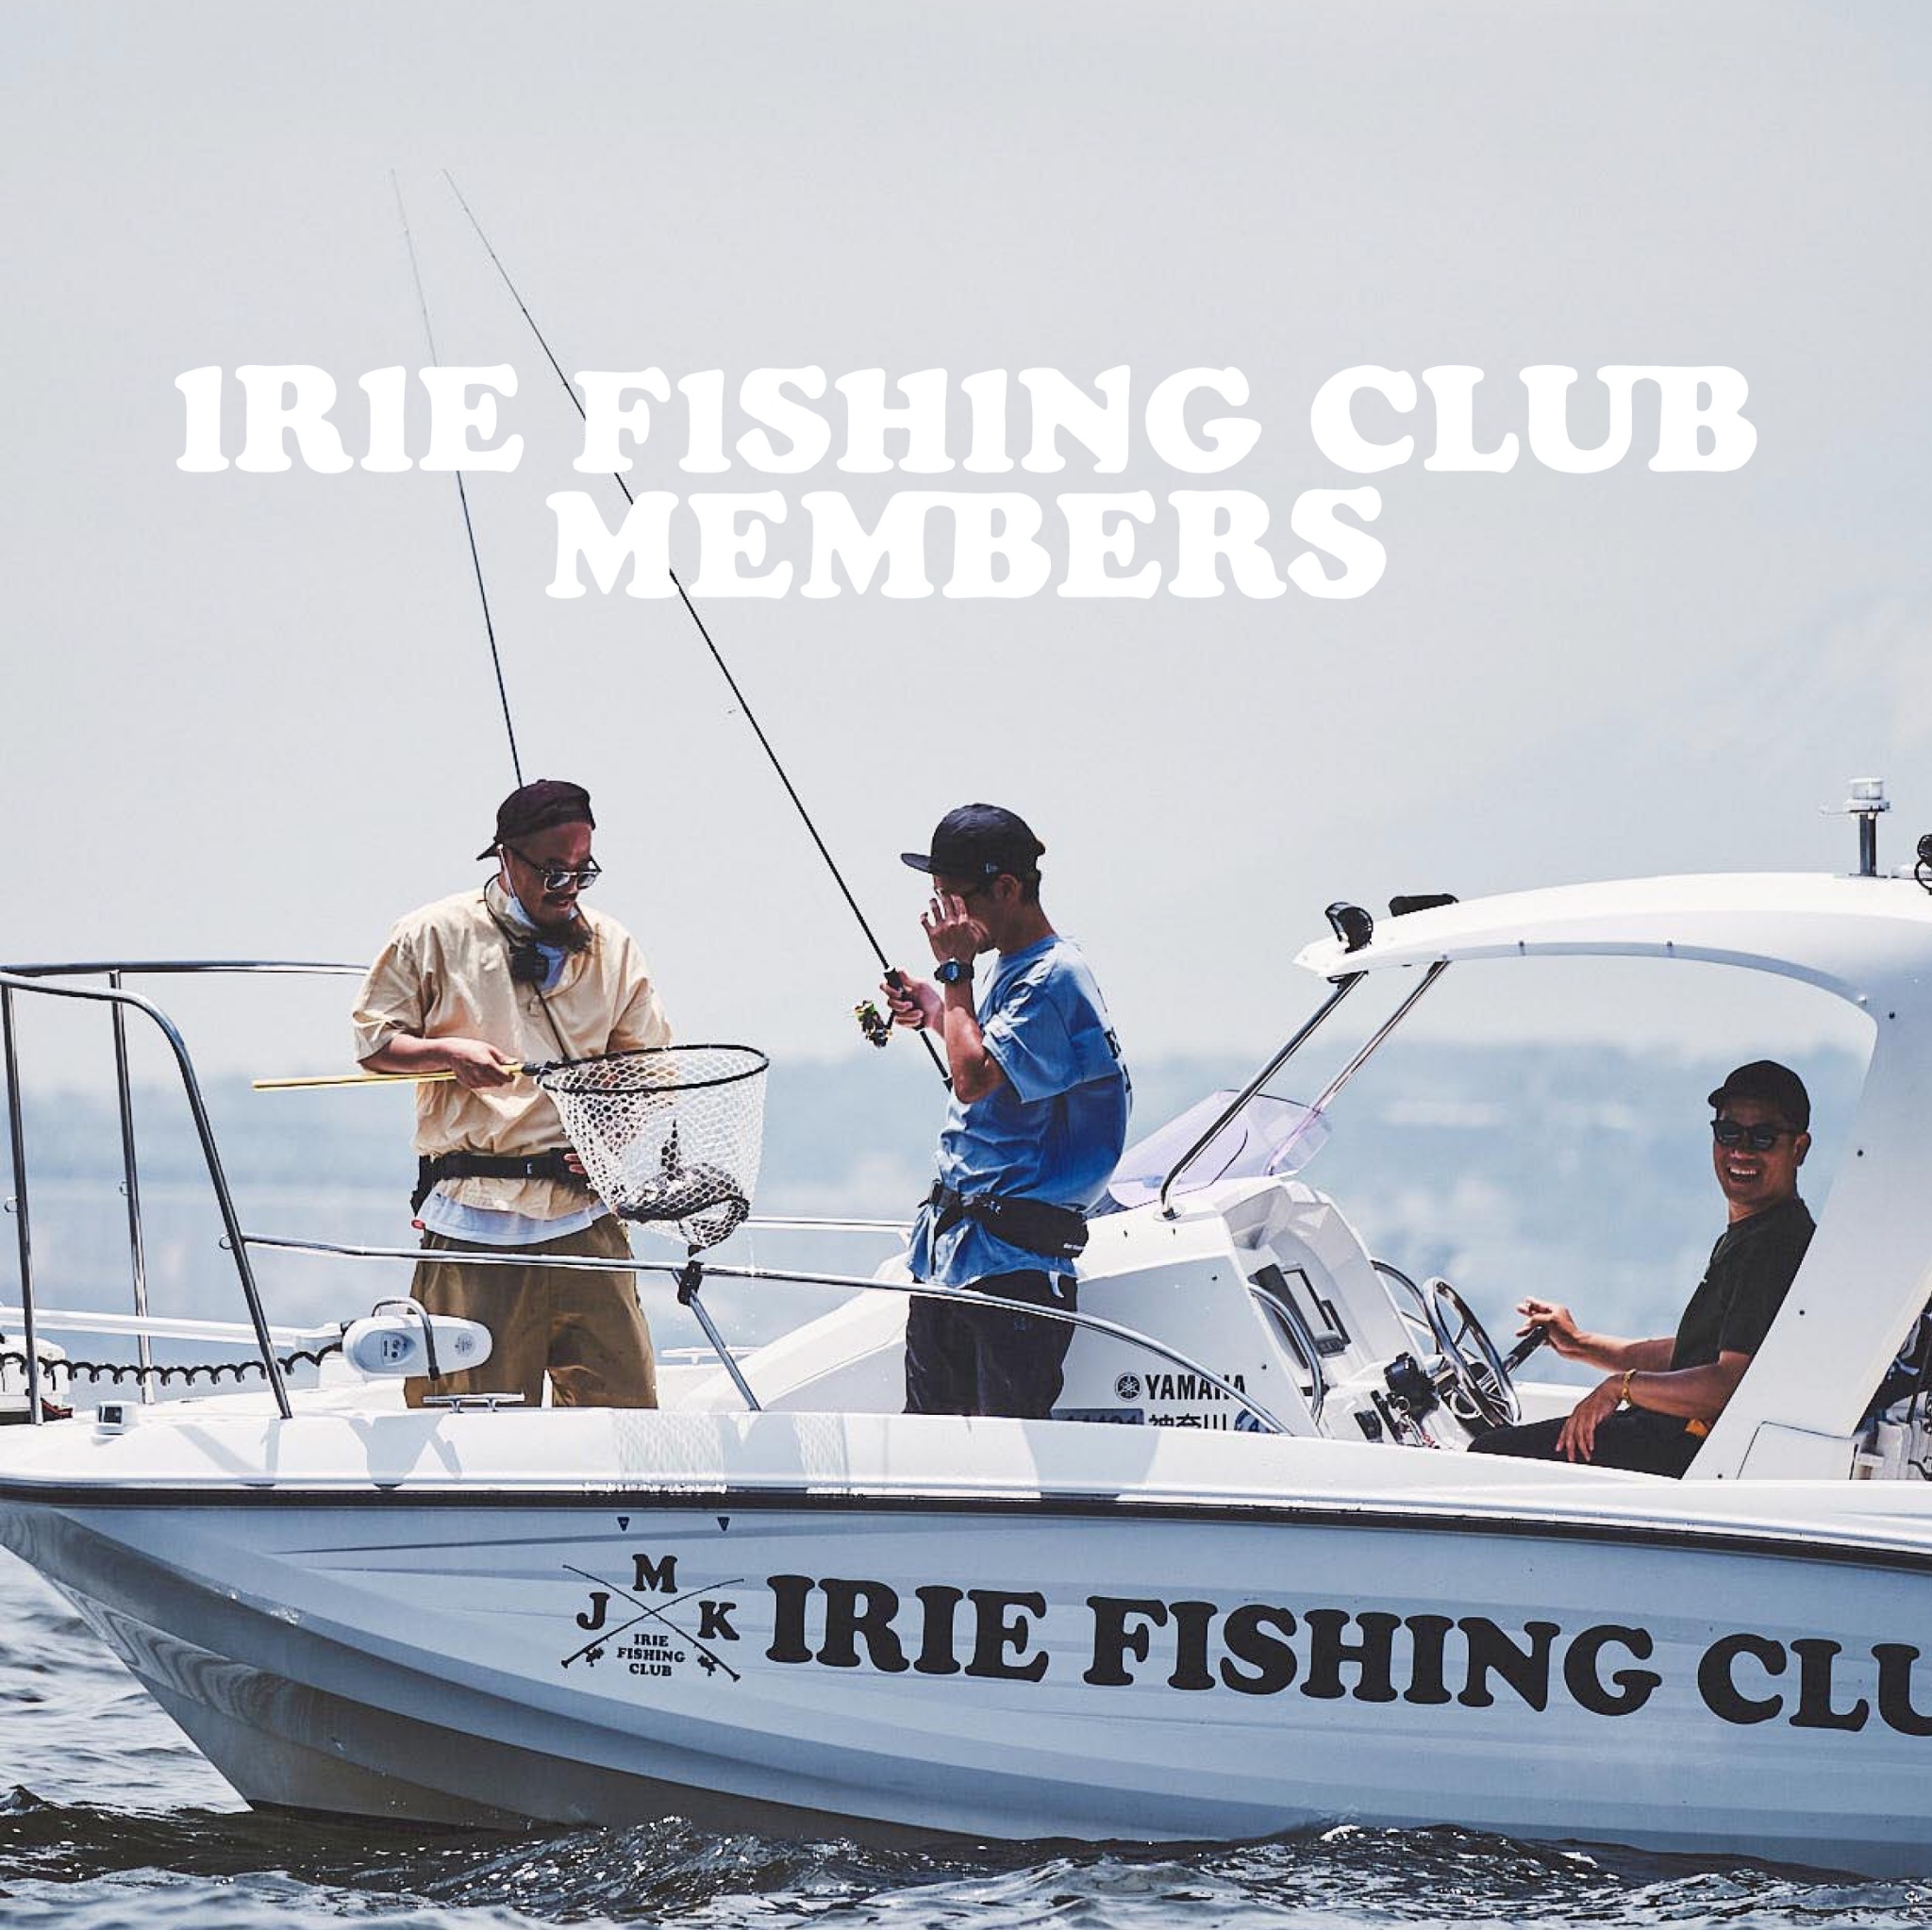 IRIE FISHING CLUB MEMBERS 募集のお知らせ | IRIE FISHING CLUB